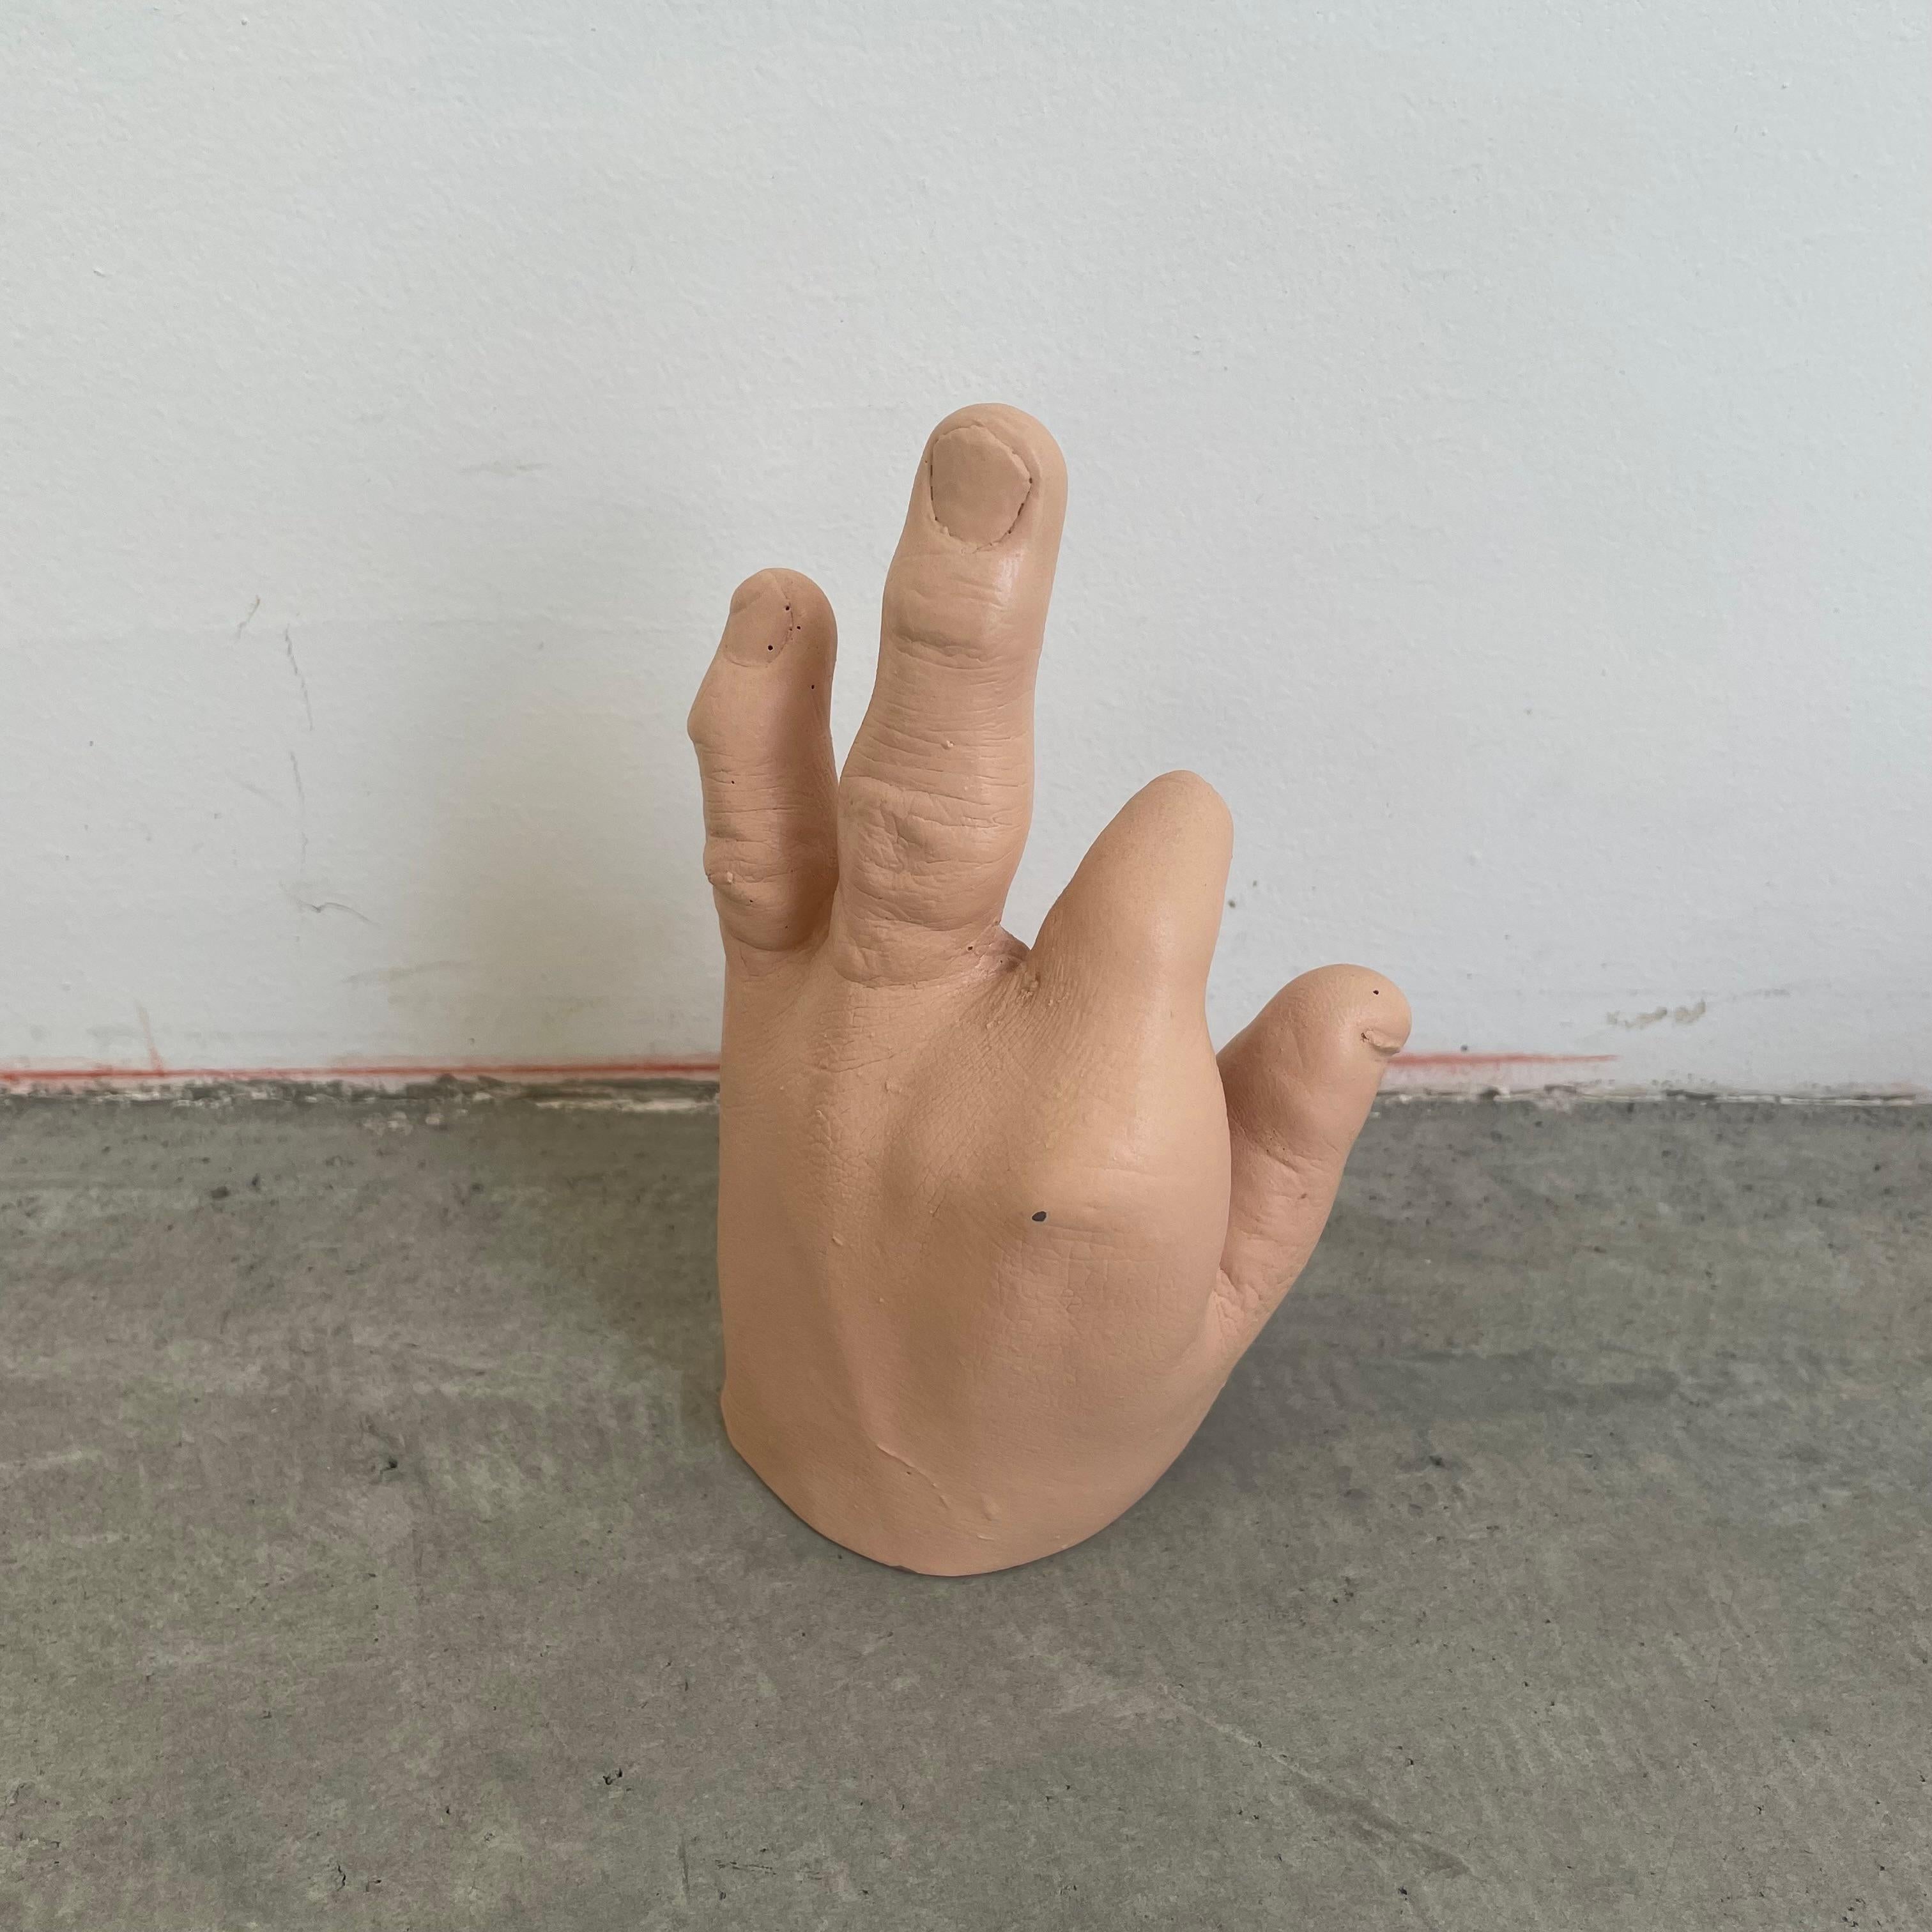 disfigured hand